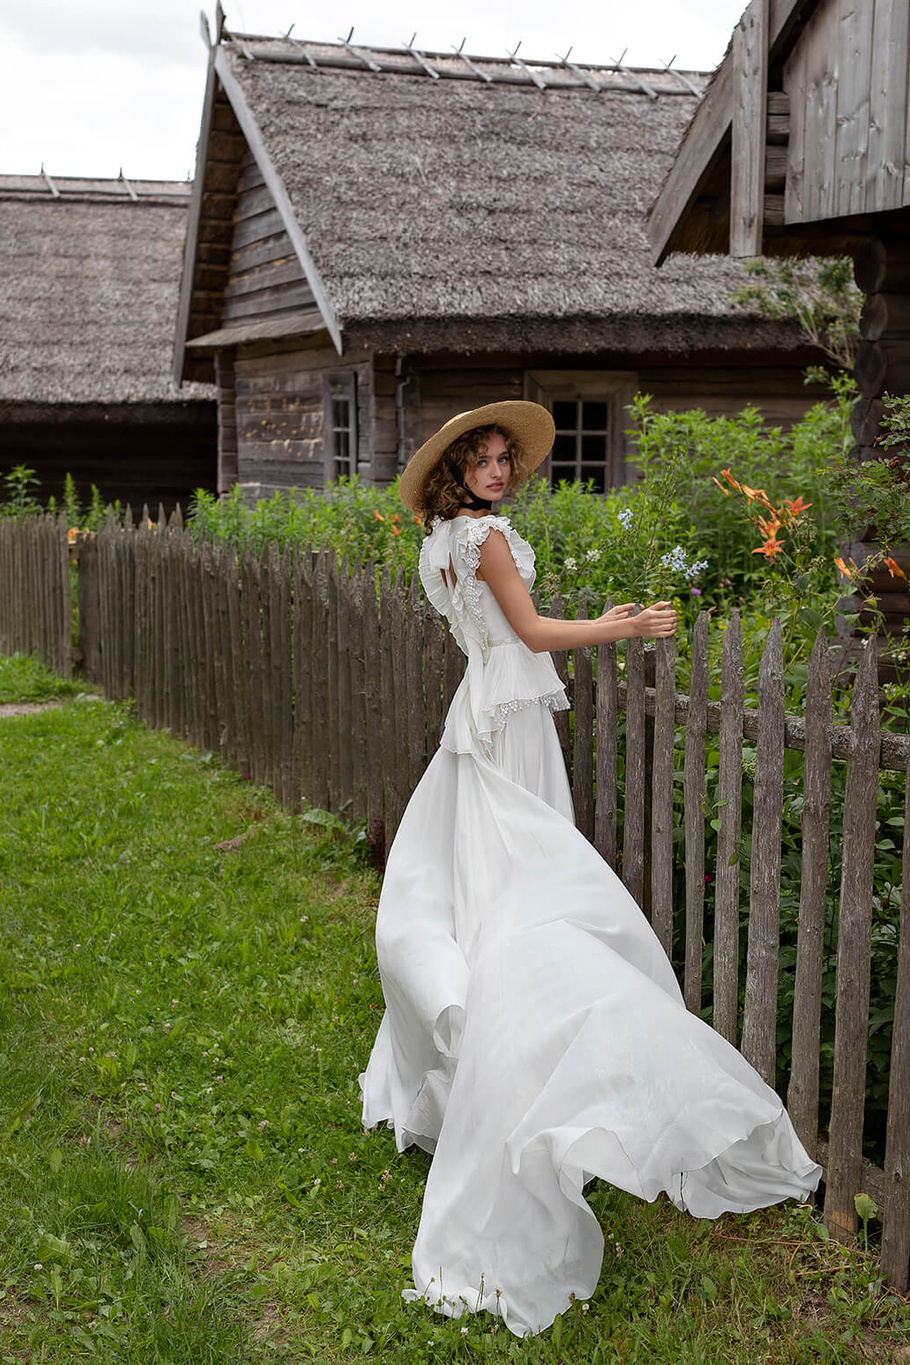 Купить свадебное платье «Лорента» Рара Авис из коллекции Сан Рей 2020 года в интернет-магазине